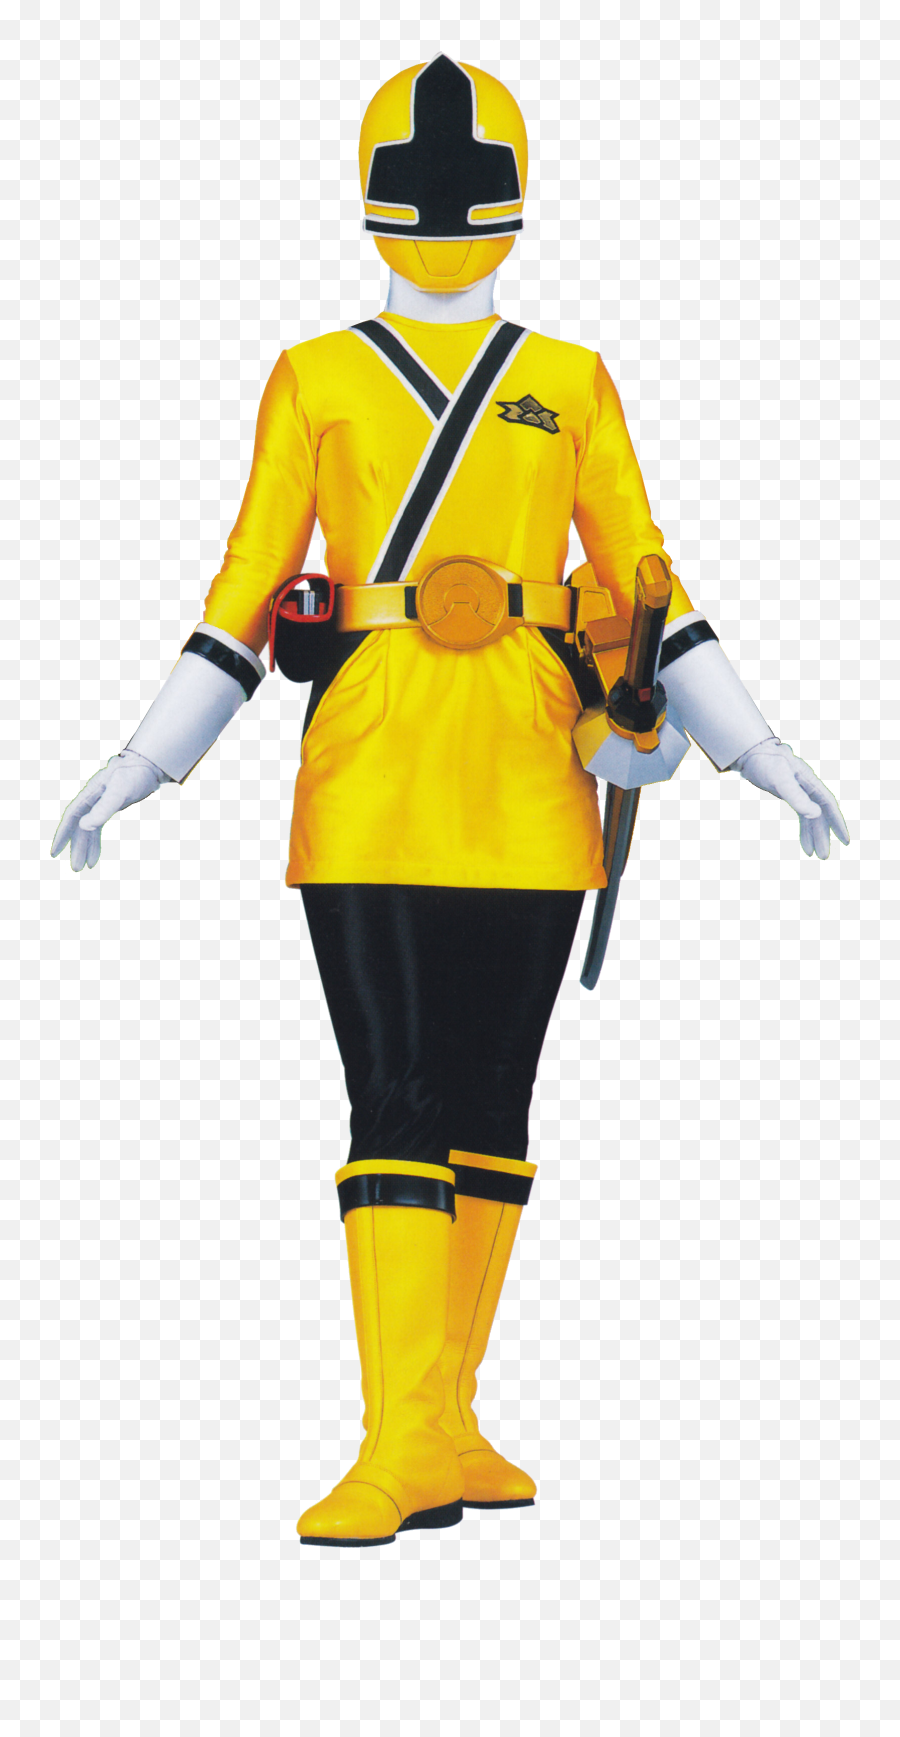 Emily Yellow Samurai Ranger - Yellow Samurai Ranger Emoji,Facebook Pink Blue Power Ranger Emoticon